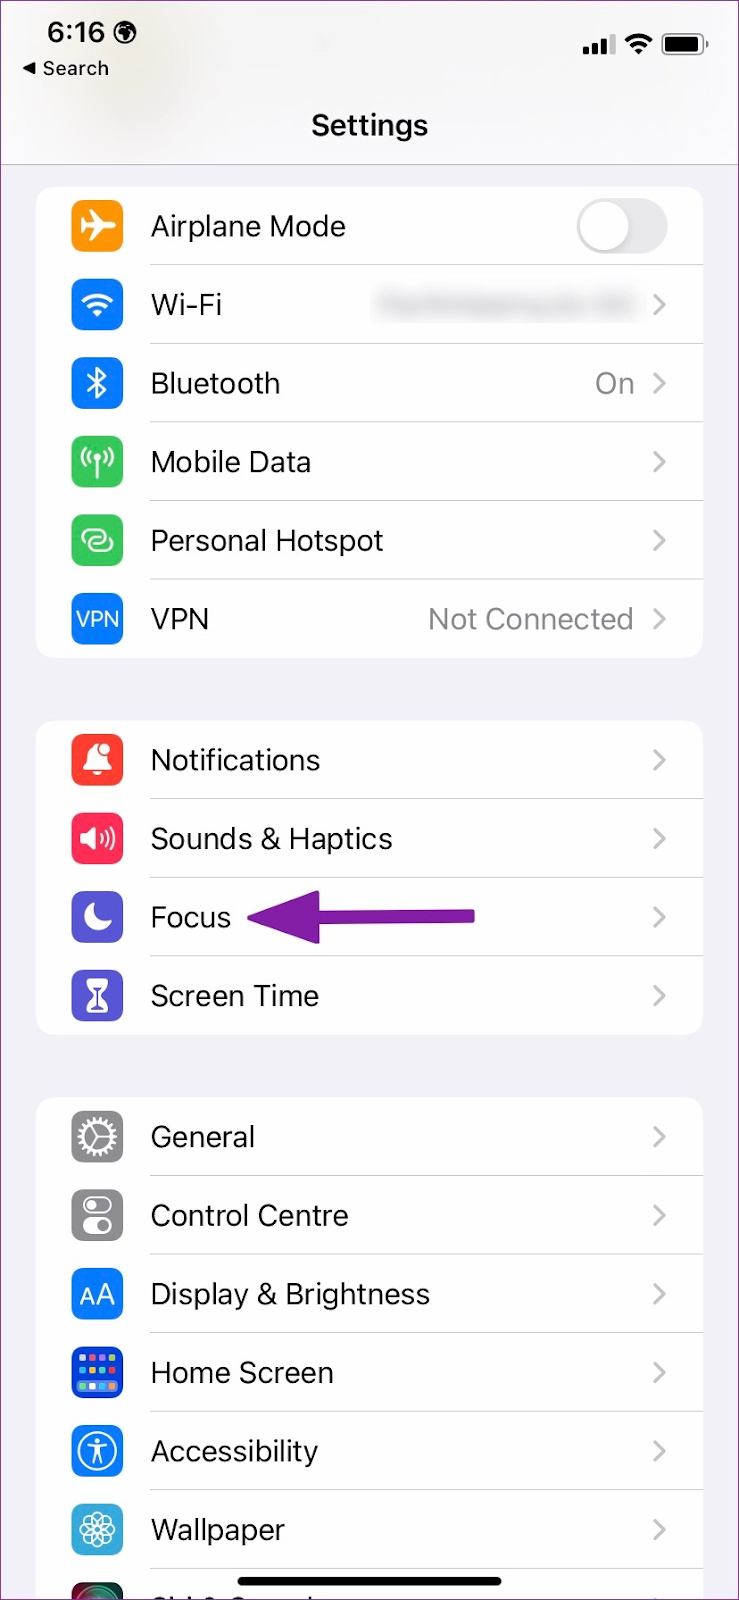 Thay đổi màn hình khóa tự động trên iPhone với iOS 16 sẽ giúp bạn có một trải nghiệm cá nhân hơn khi mở khóa điện thoại. Bạn có thể dễ dàng thay đổi hình nền và kiểu khóa màn hình, cùng với các tính năng khác, đảm bảo rằng màn hình khóa của bạn sẽ phù hợp với phong cách của bạn.